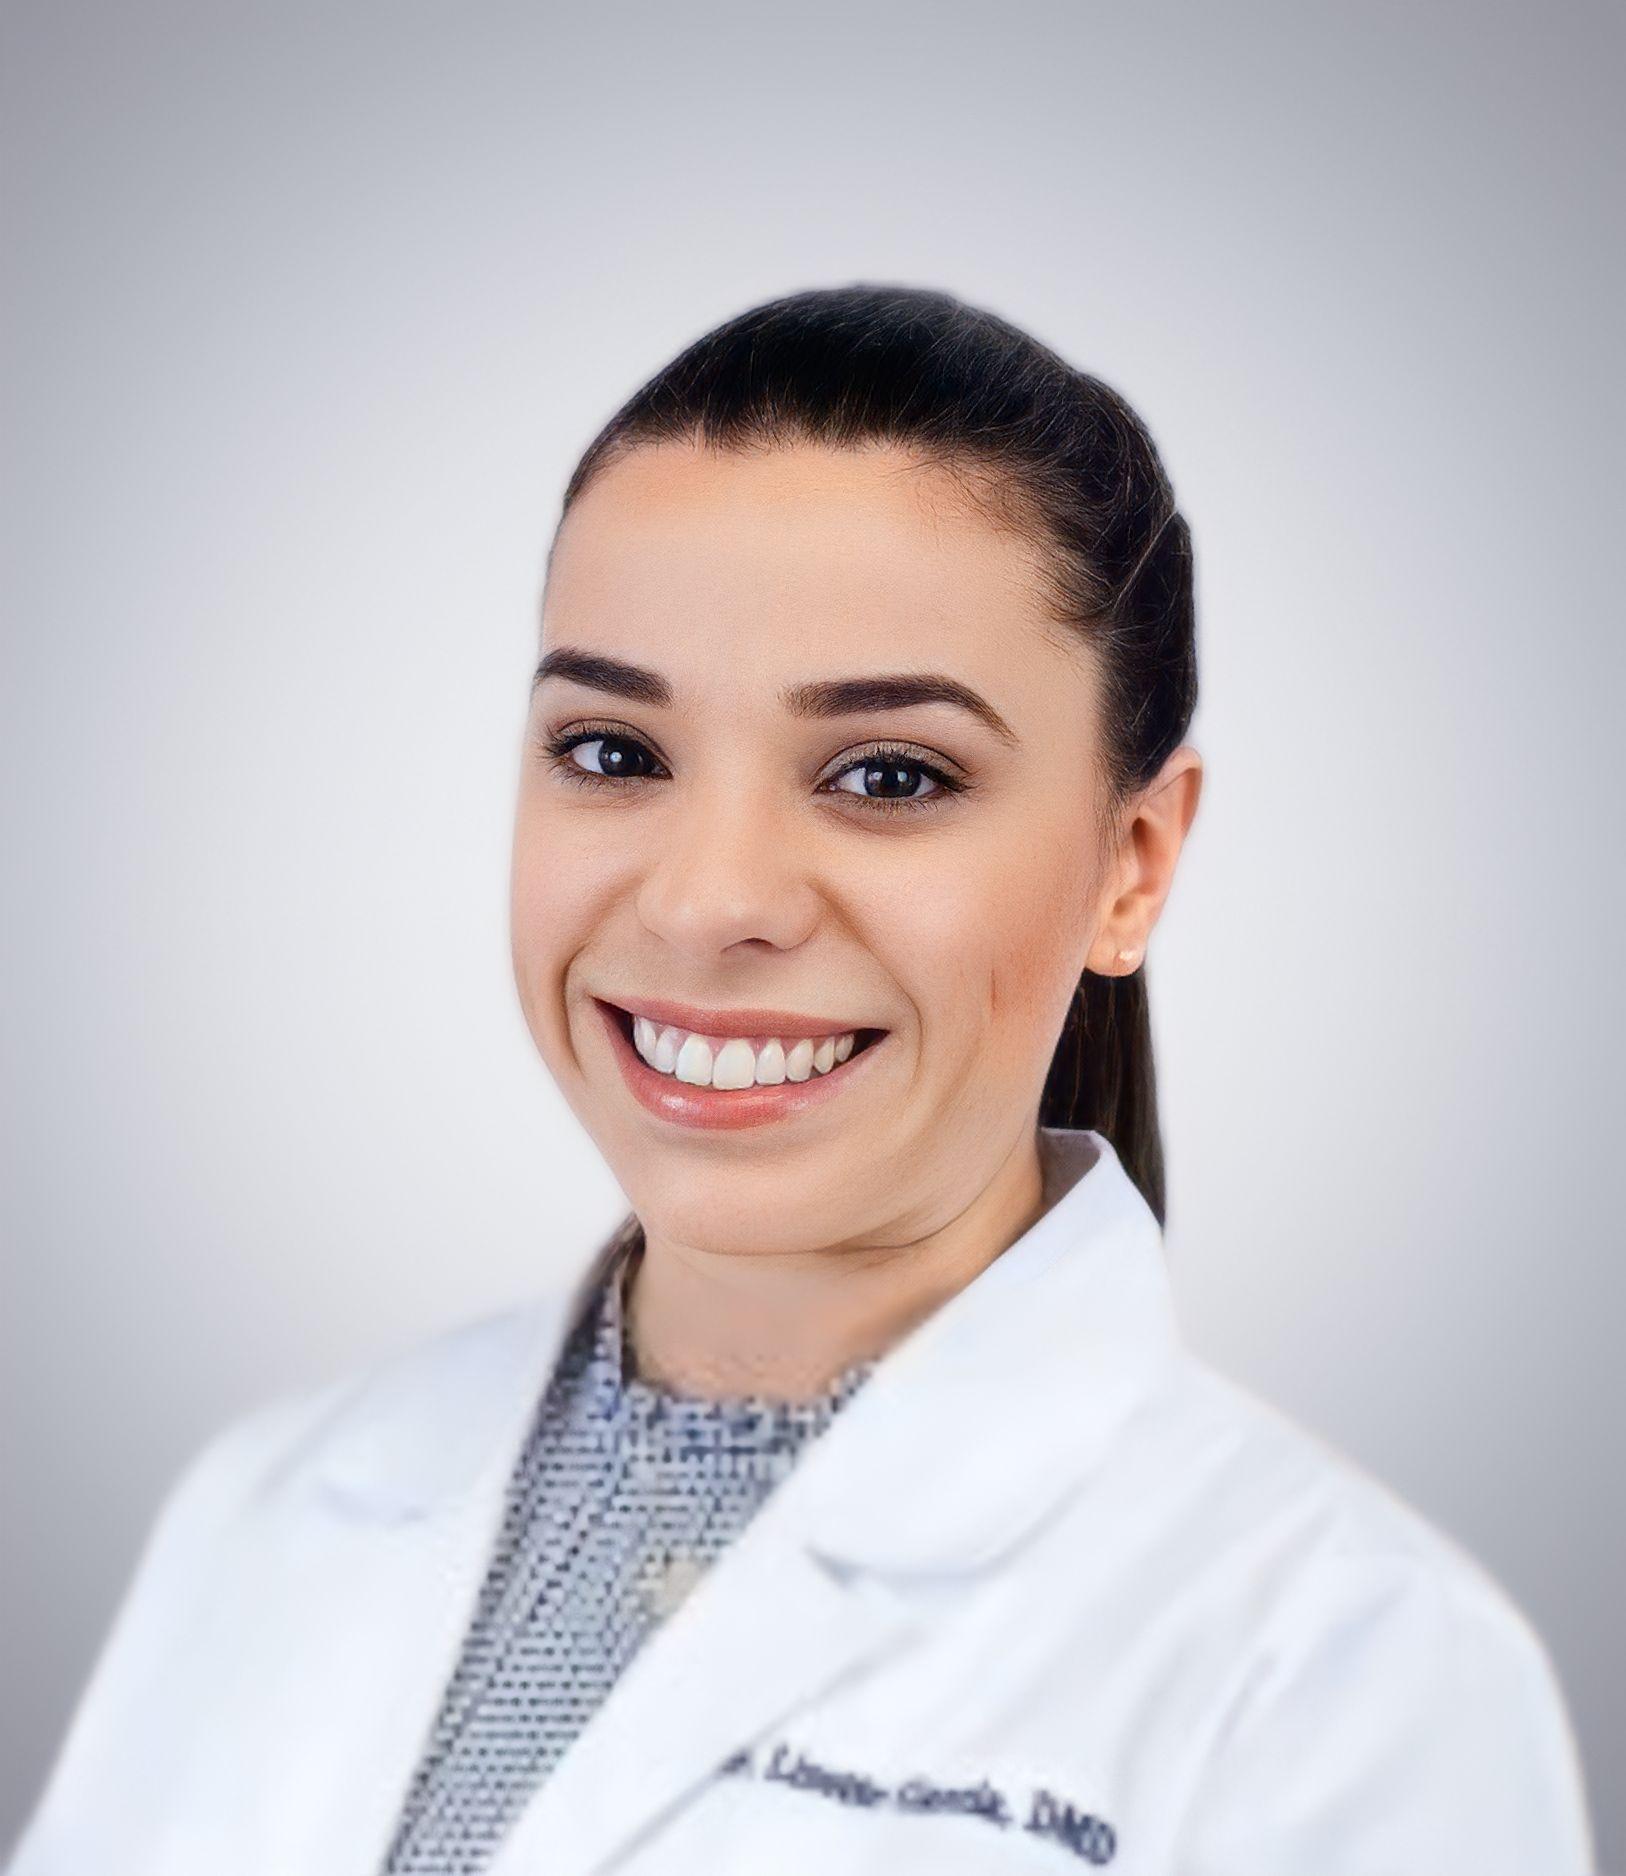 Lizette Garcia, DMD General Dentist in Miami, FL